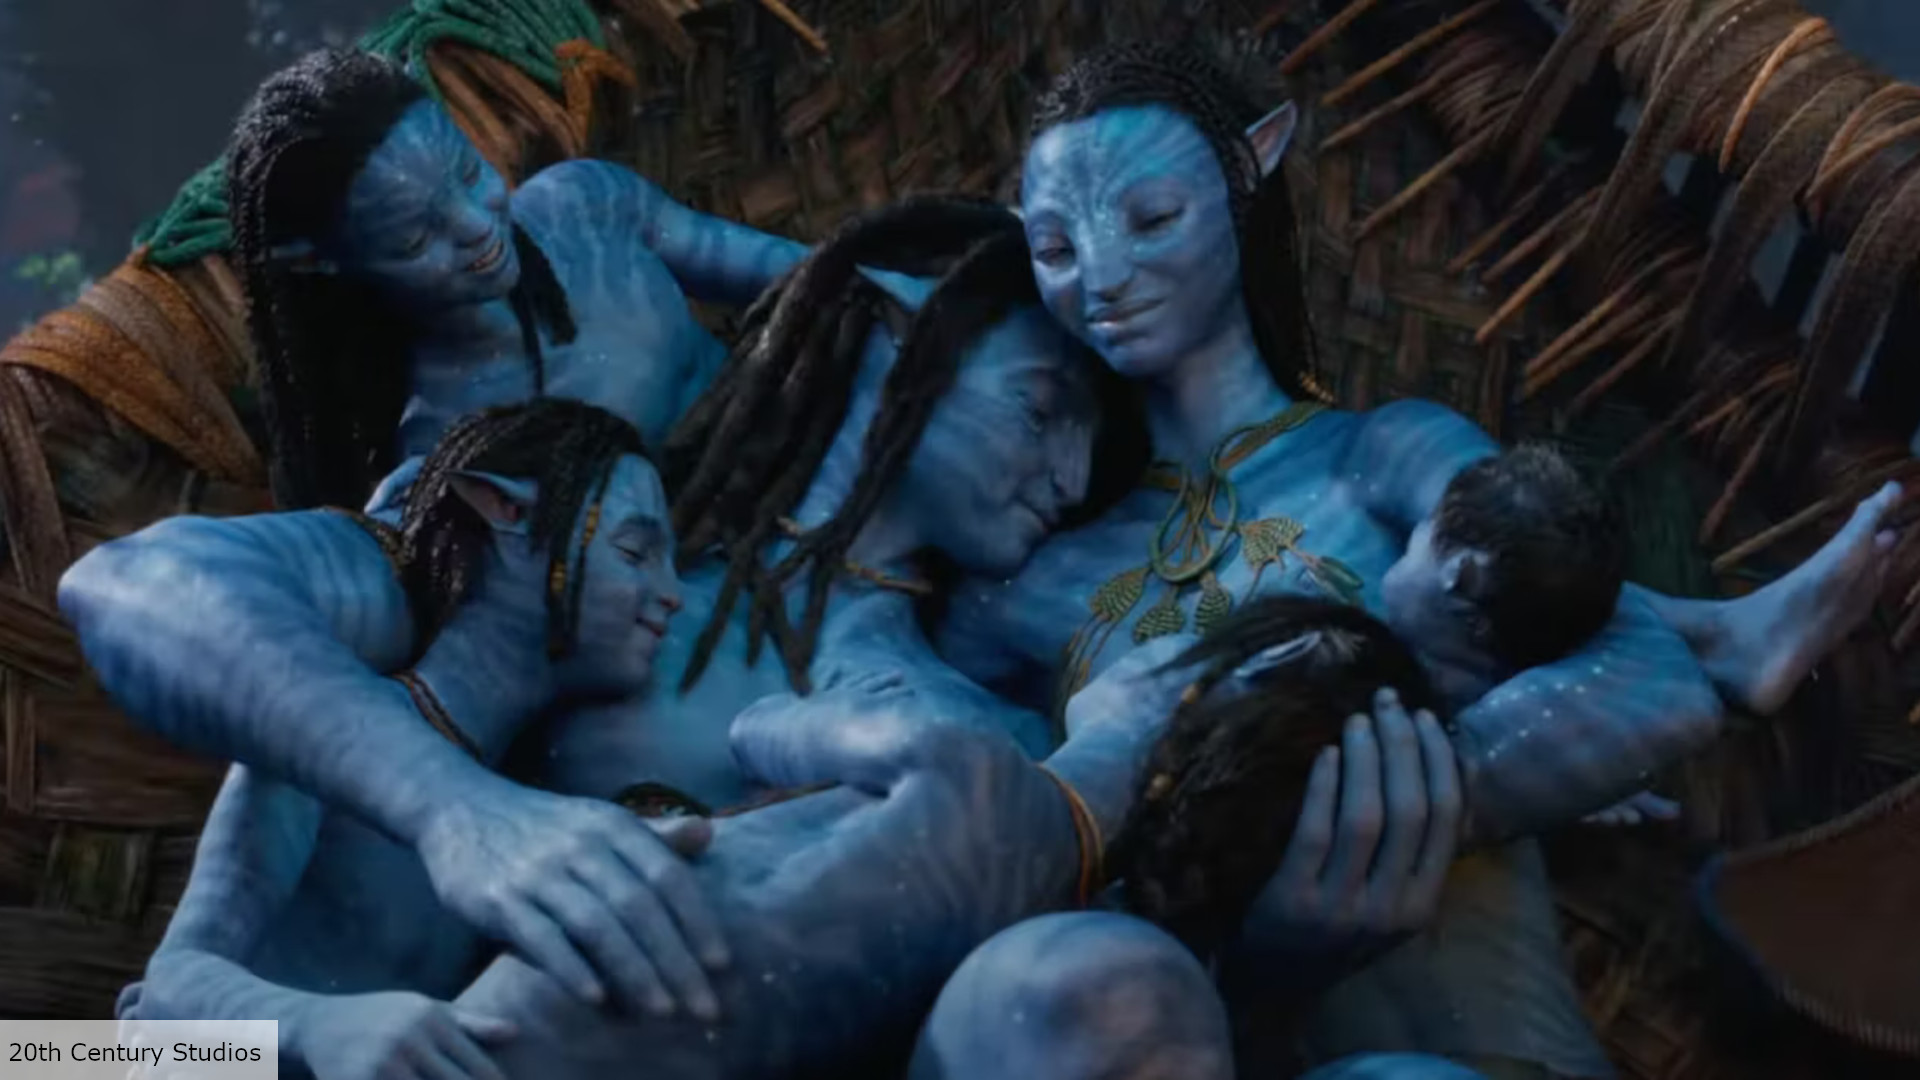 Exclusive: Na'vi do have genitals say Avatar 2 cast | The Digital Fix